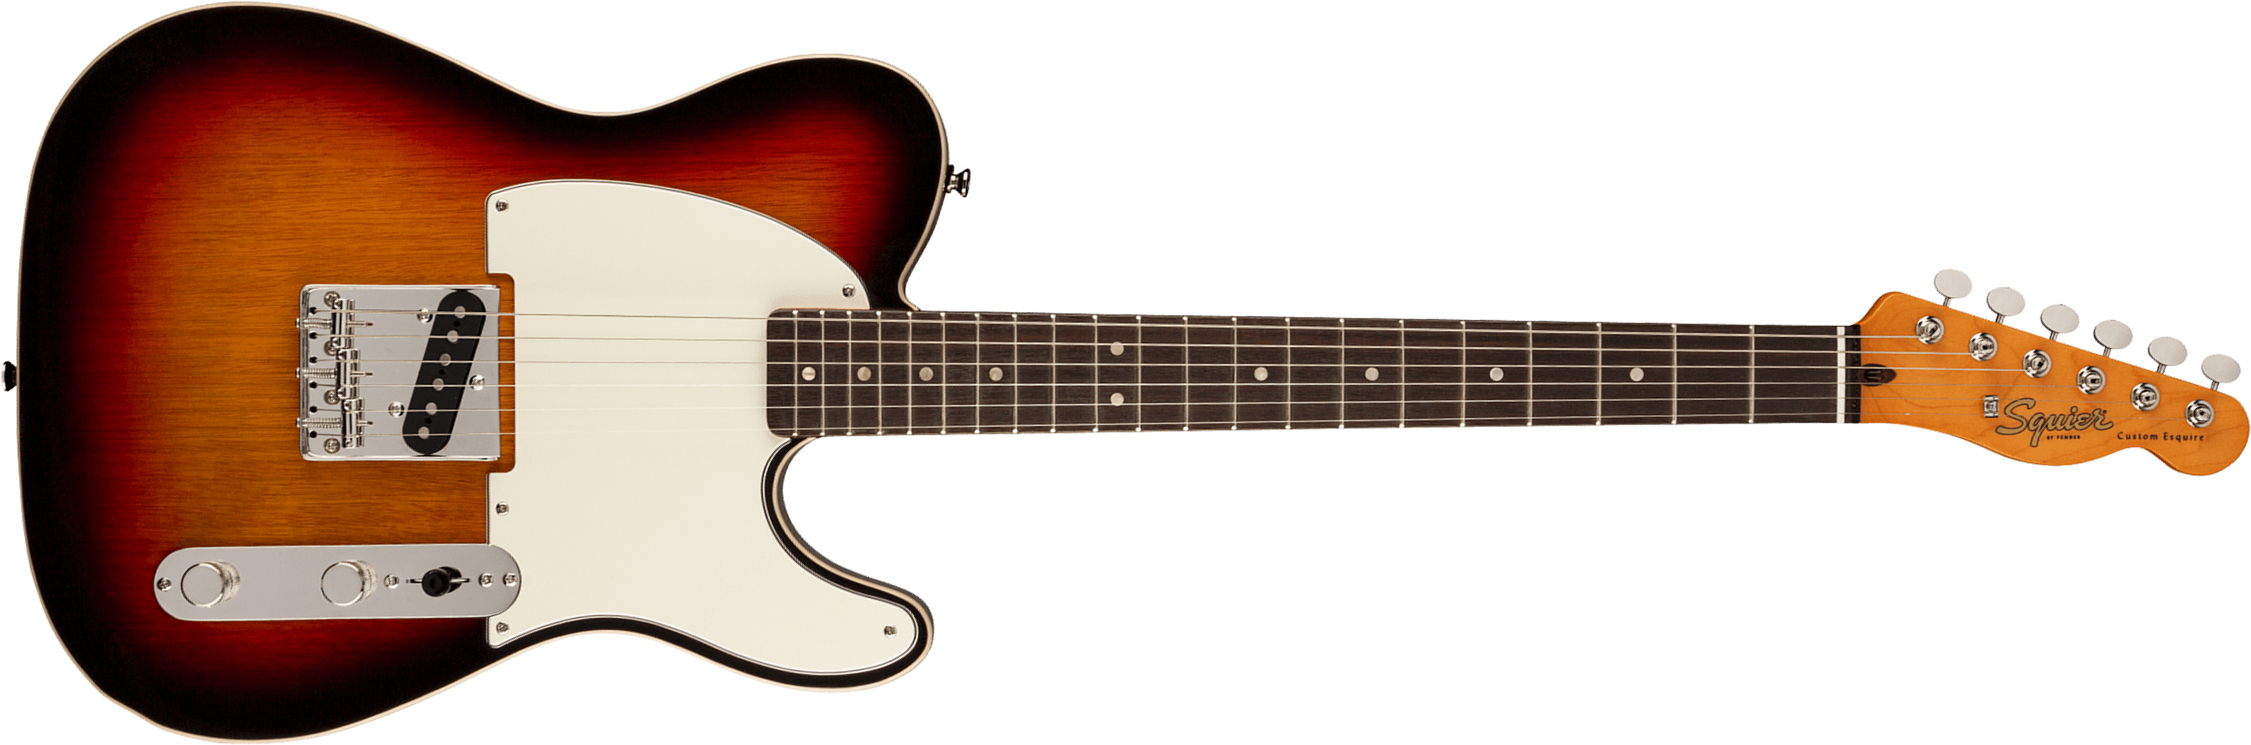 Squier Esquire Tele '60s Custom Classic Vibe Fsr Ltd Lau - 3 Color Sunburst - Guitarra eléctrica con forma de tel - Main picture